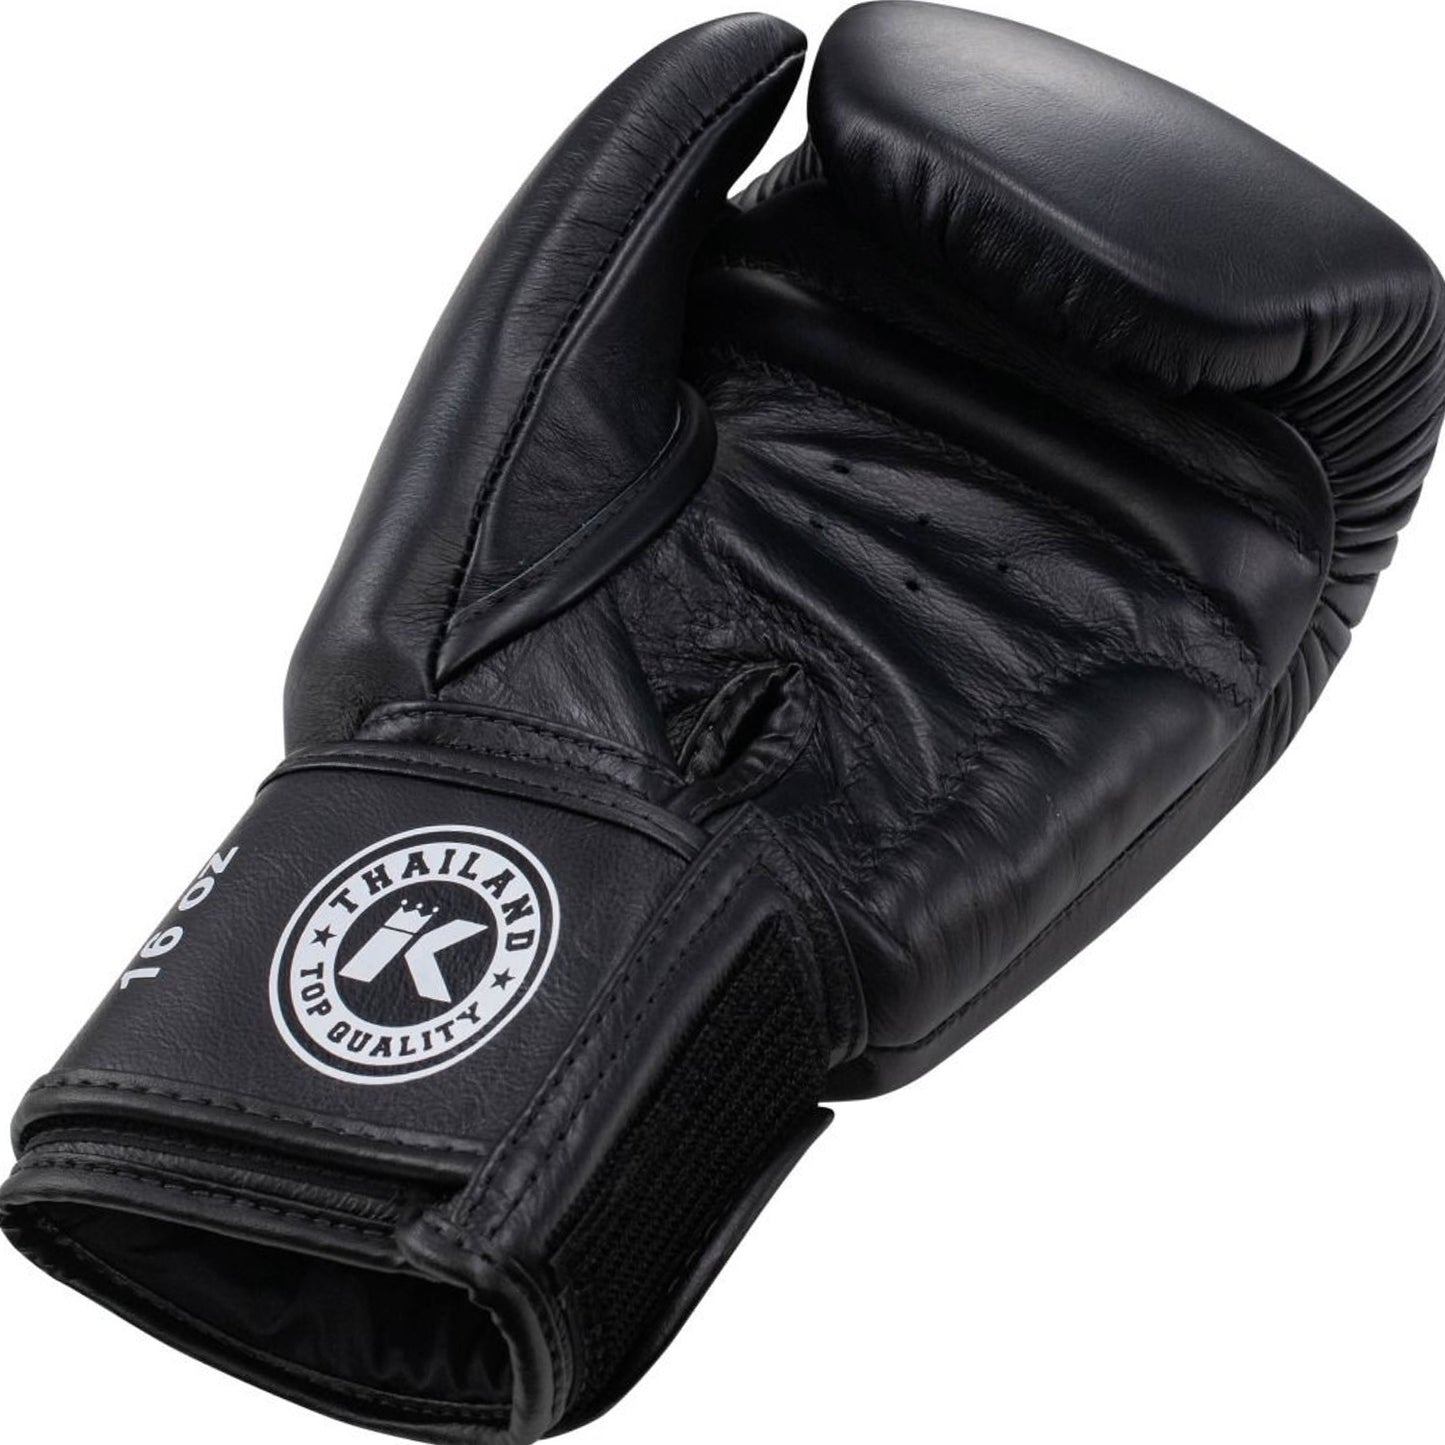 King Pro Boxing Boxing Gloves KPB/BGVL 3 Leather Black